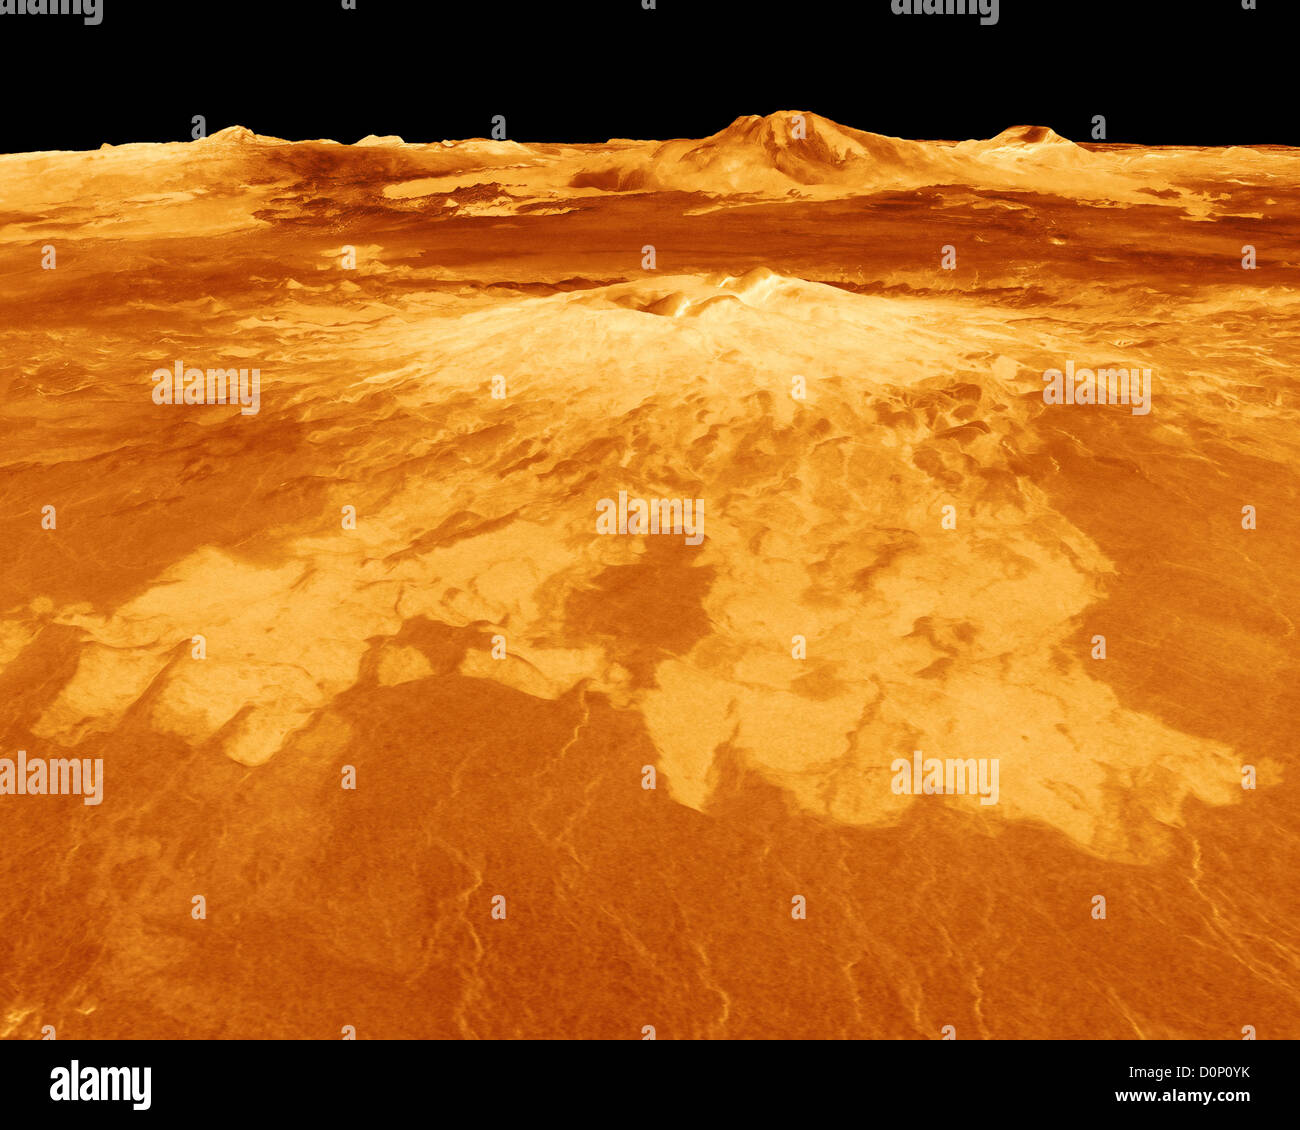 Vue en perspective tridimensionnelle de Sapas Mons sur Vénus vue par Magellan (création numérique) Banque D'Images